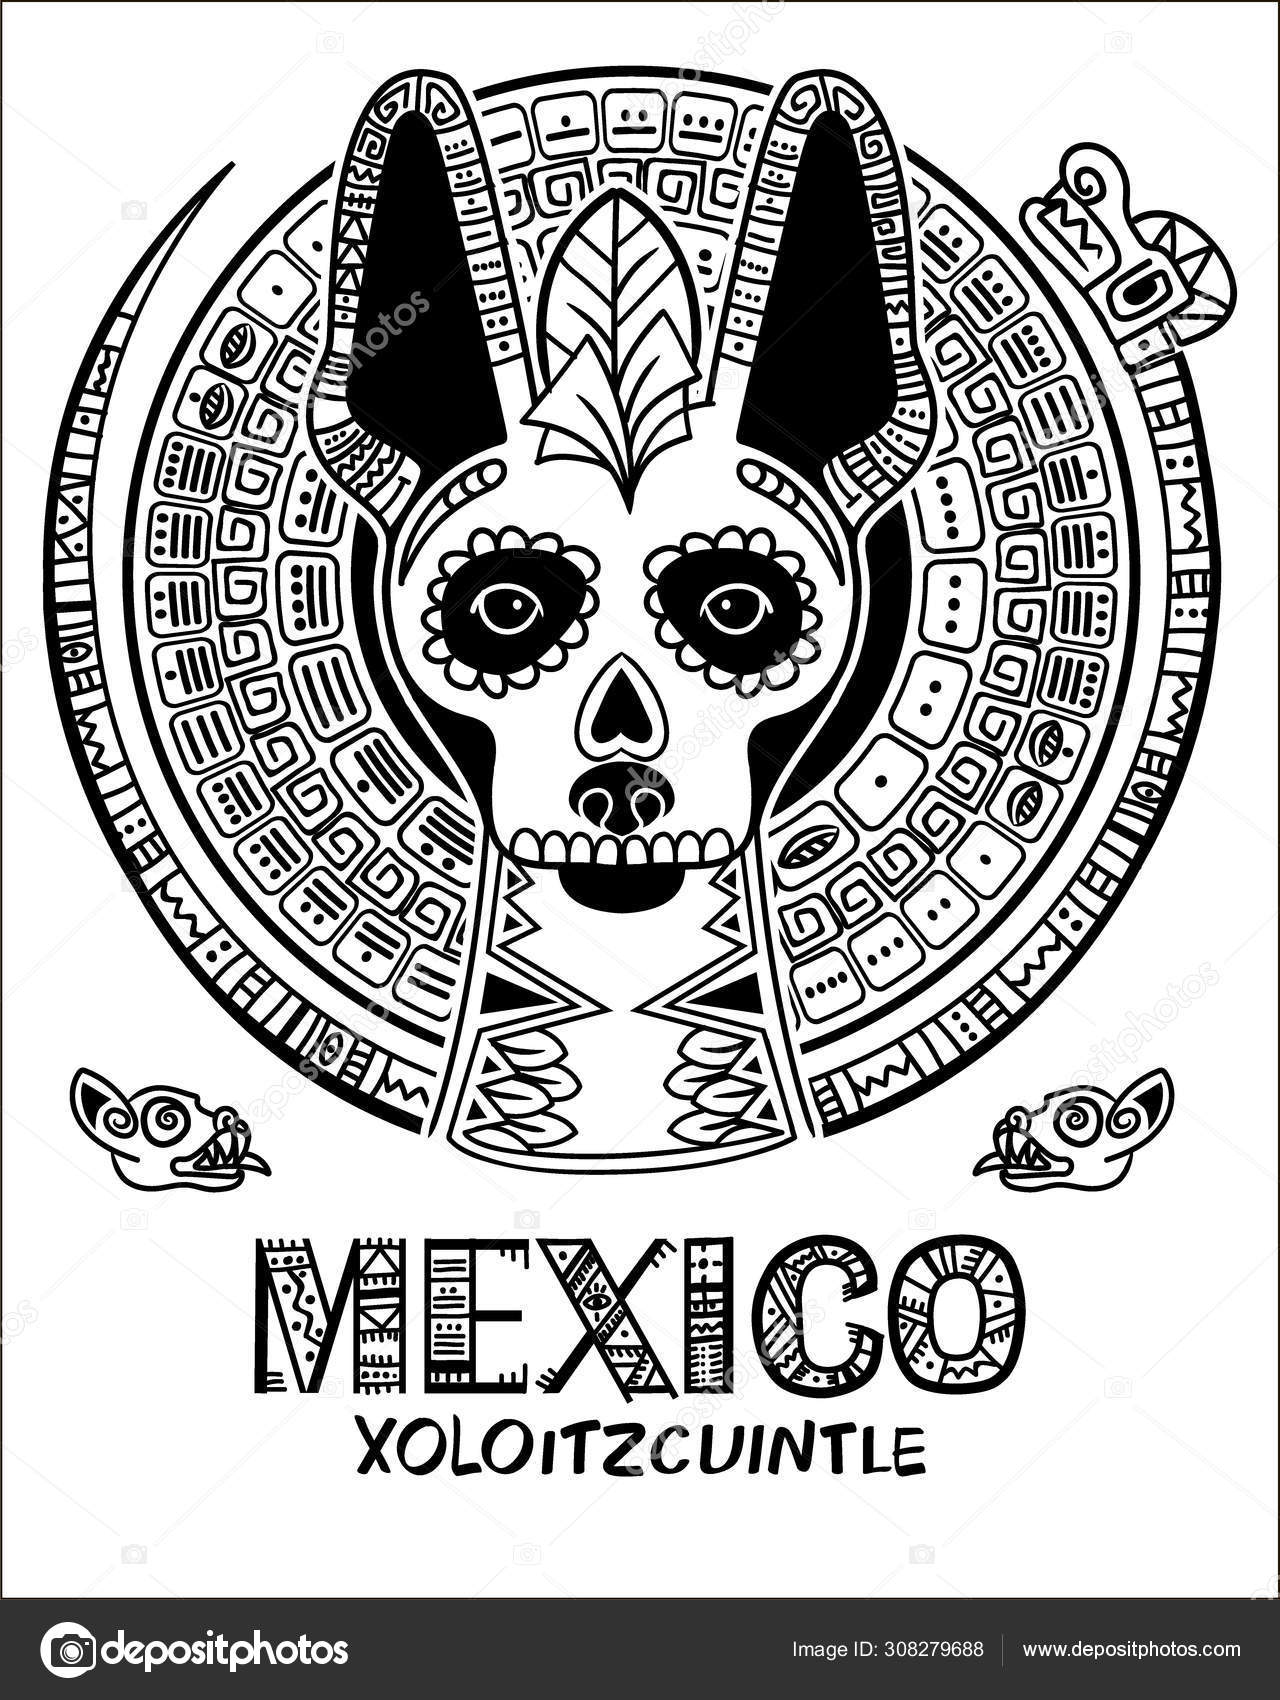 Xoloitzcuintle imágenes de stock de arte vectorial | Depositphotos